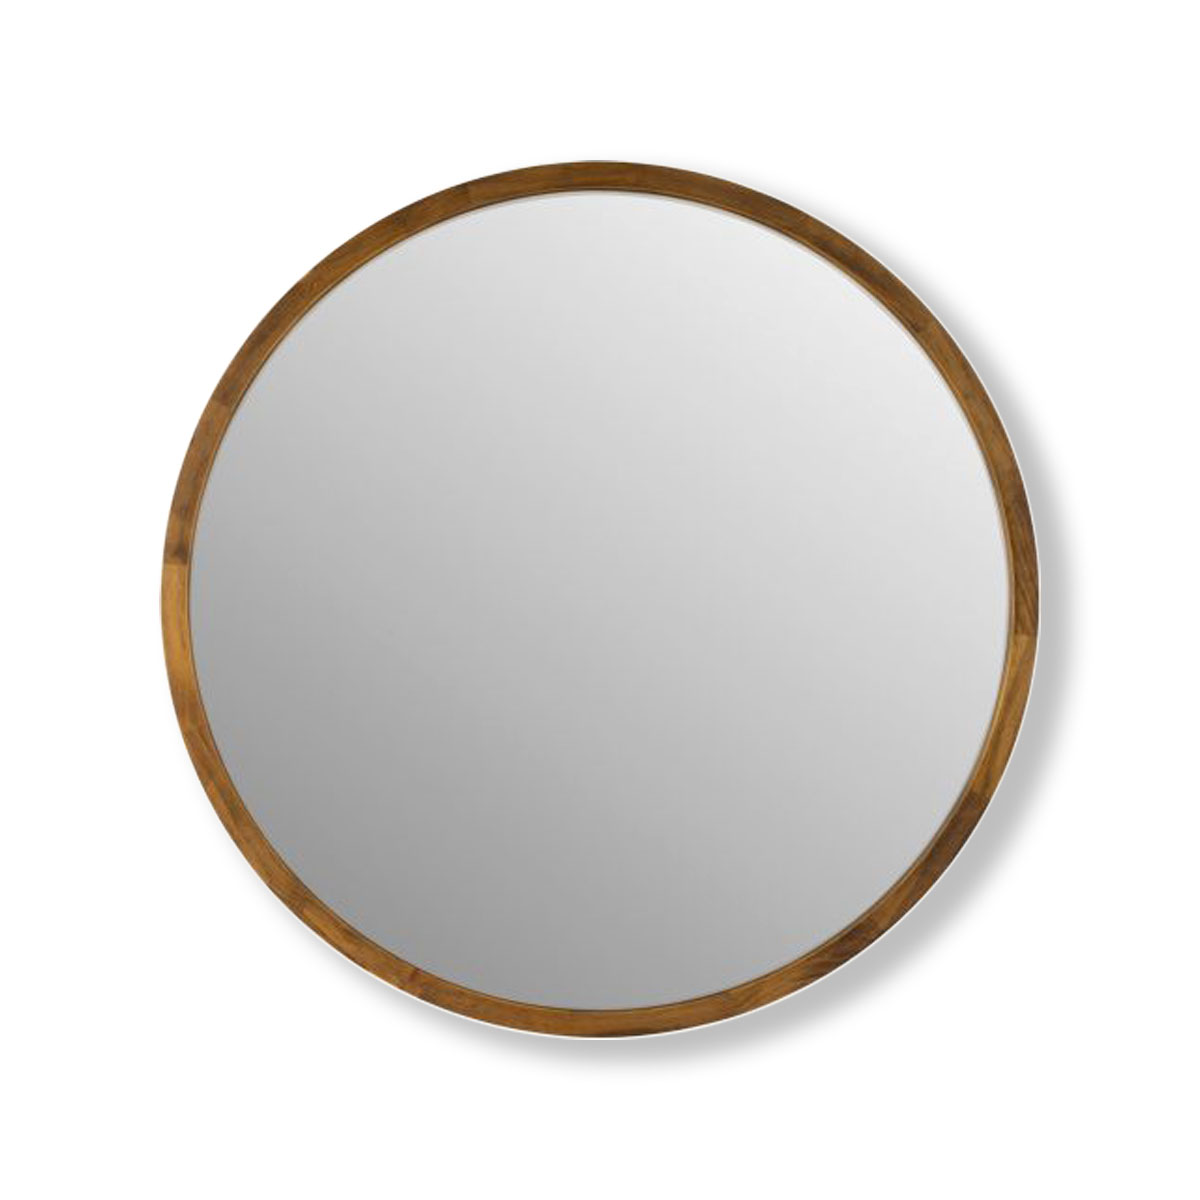 Cebu Dark Wood Round Mirror 80cm Or, Copper Round Mirror 80cm